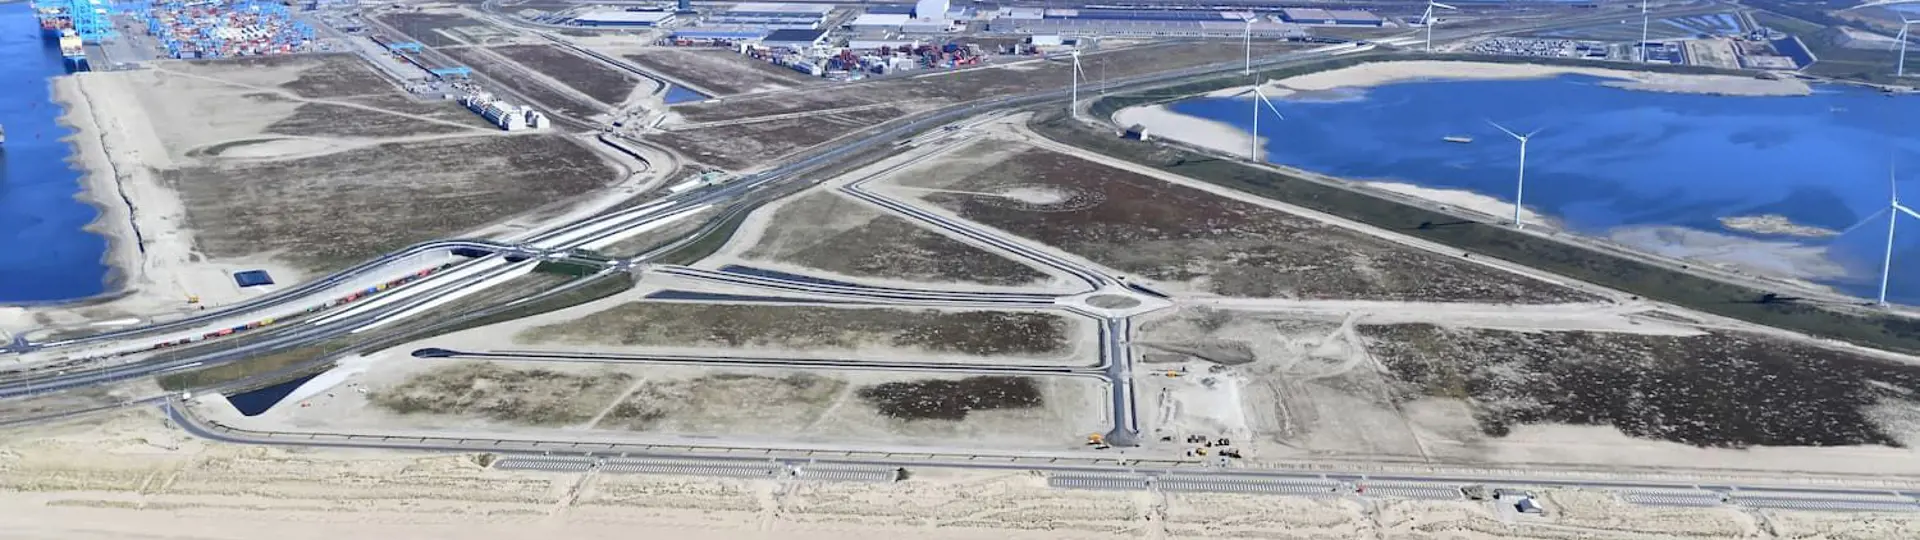 Luchtfoto Distripark Maasvlakte West Havenbedrijf Rotterdam Danny Cornelissen Juni 2020